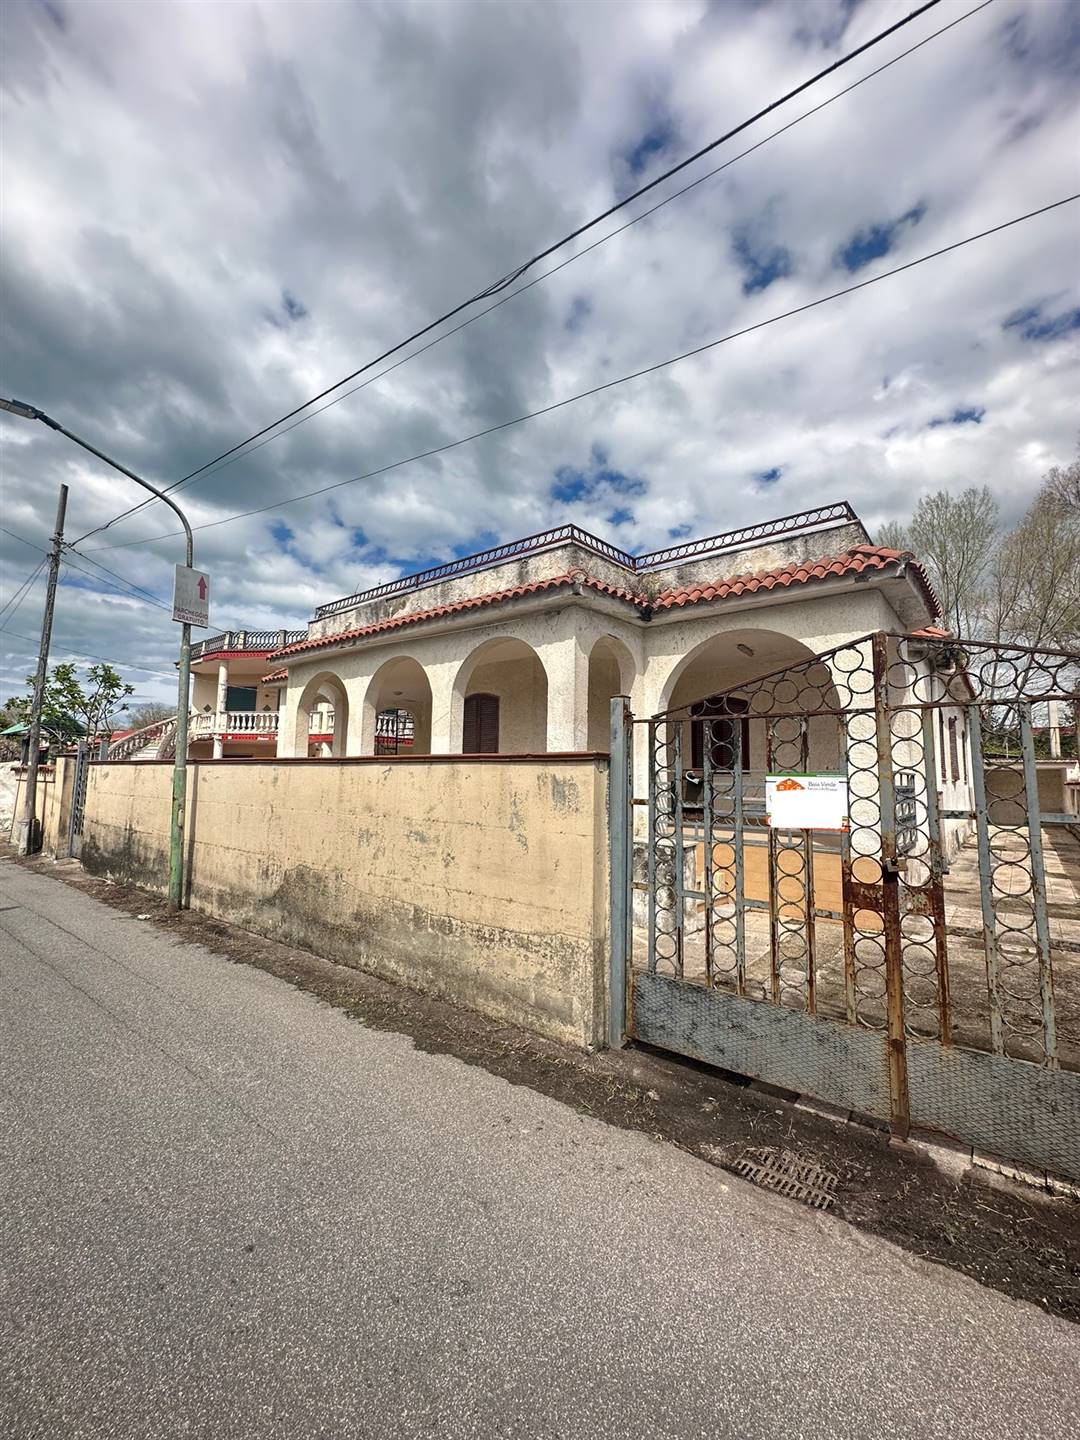 Villa in vendita a Castel Volturno, 4 locali, zona Località: DESTRA VOLTURNO, prezzo € 55.000 | PortaleAgenzieImmobiliari.it